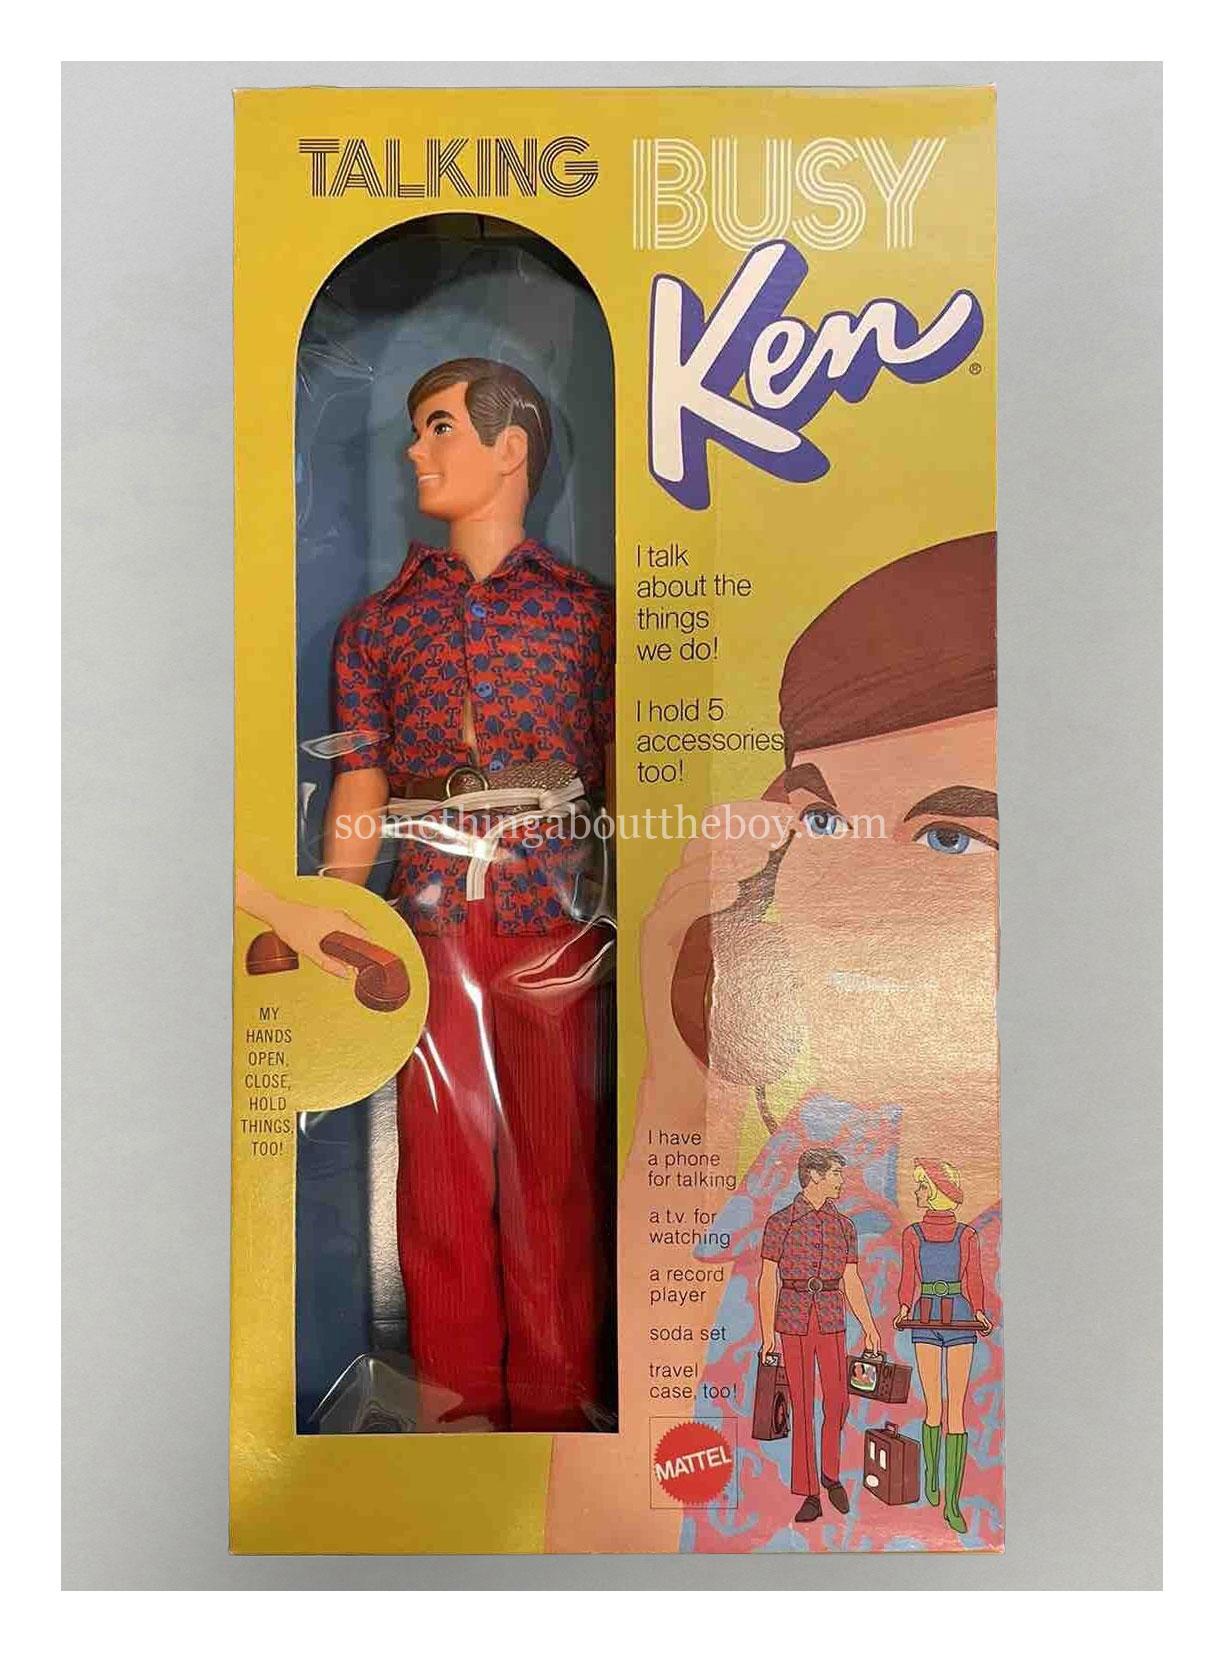 1972 #1196 Talking Busy Ken in Canadian packaging